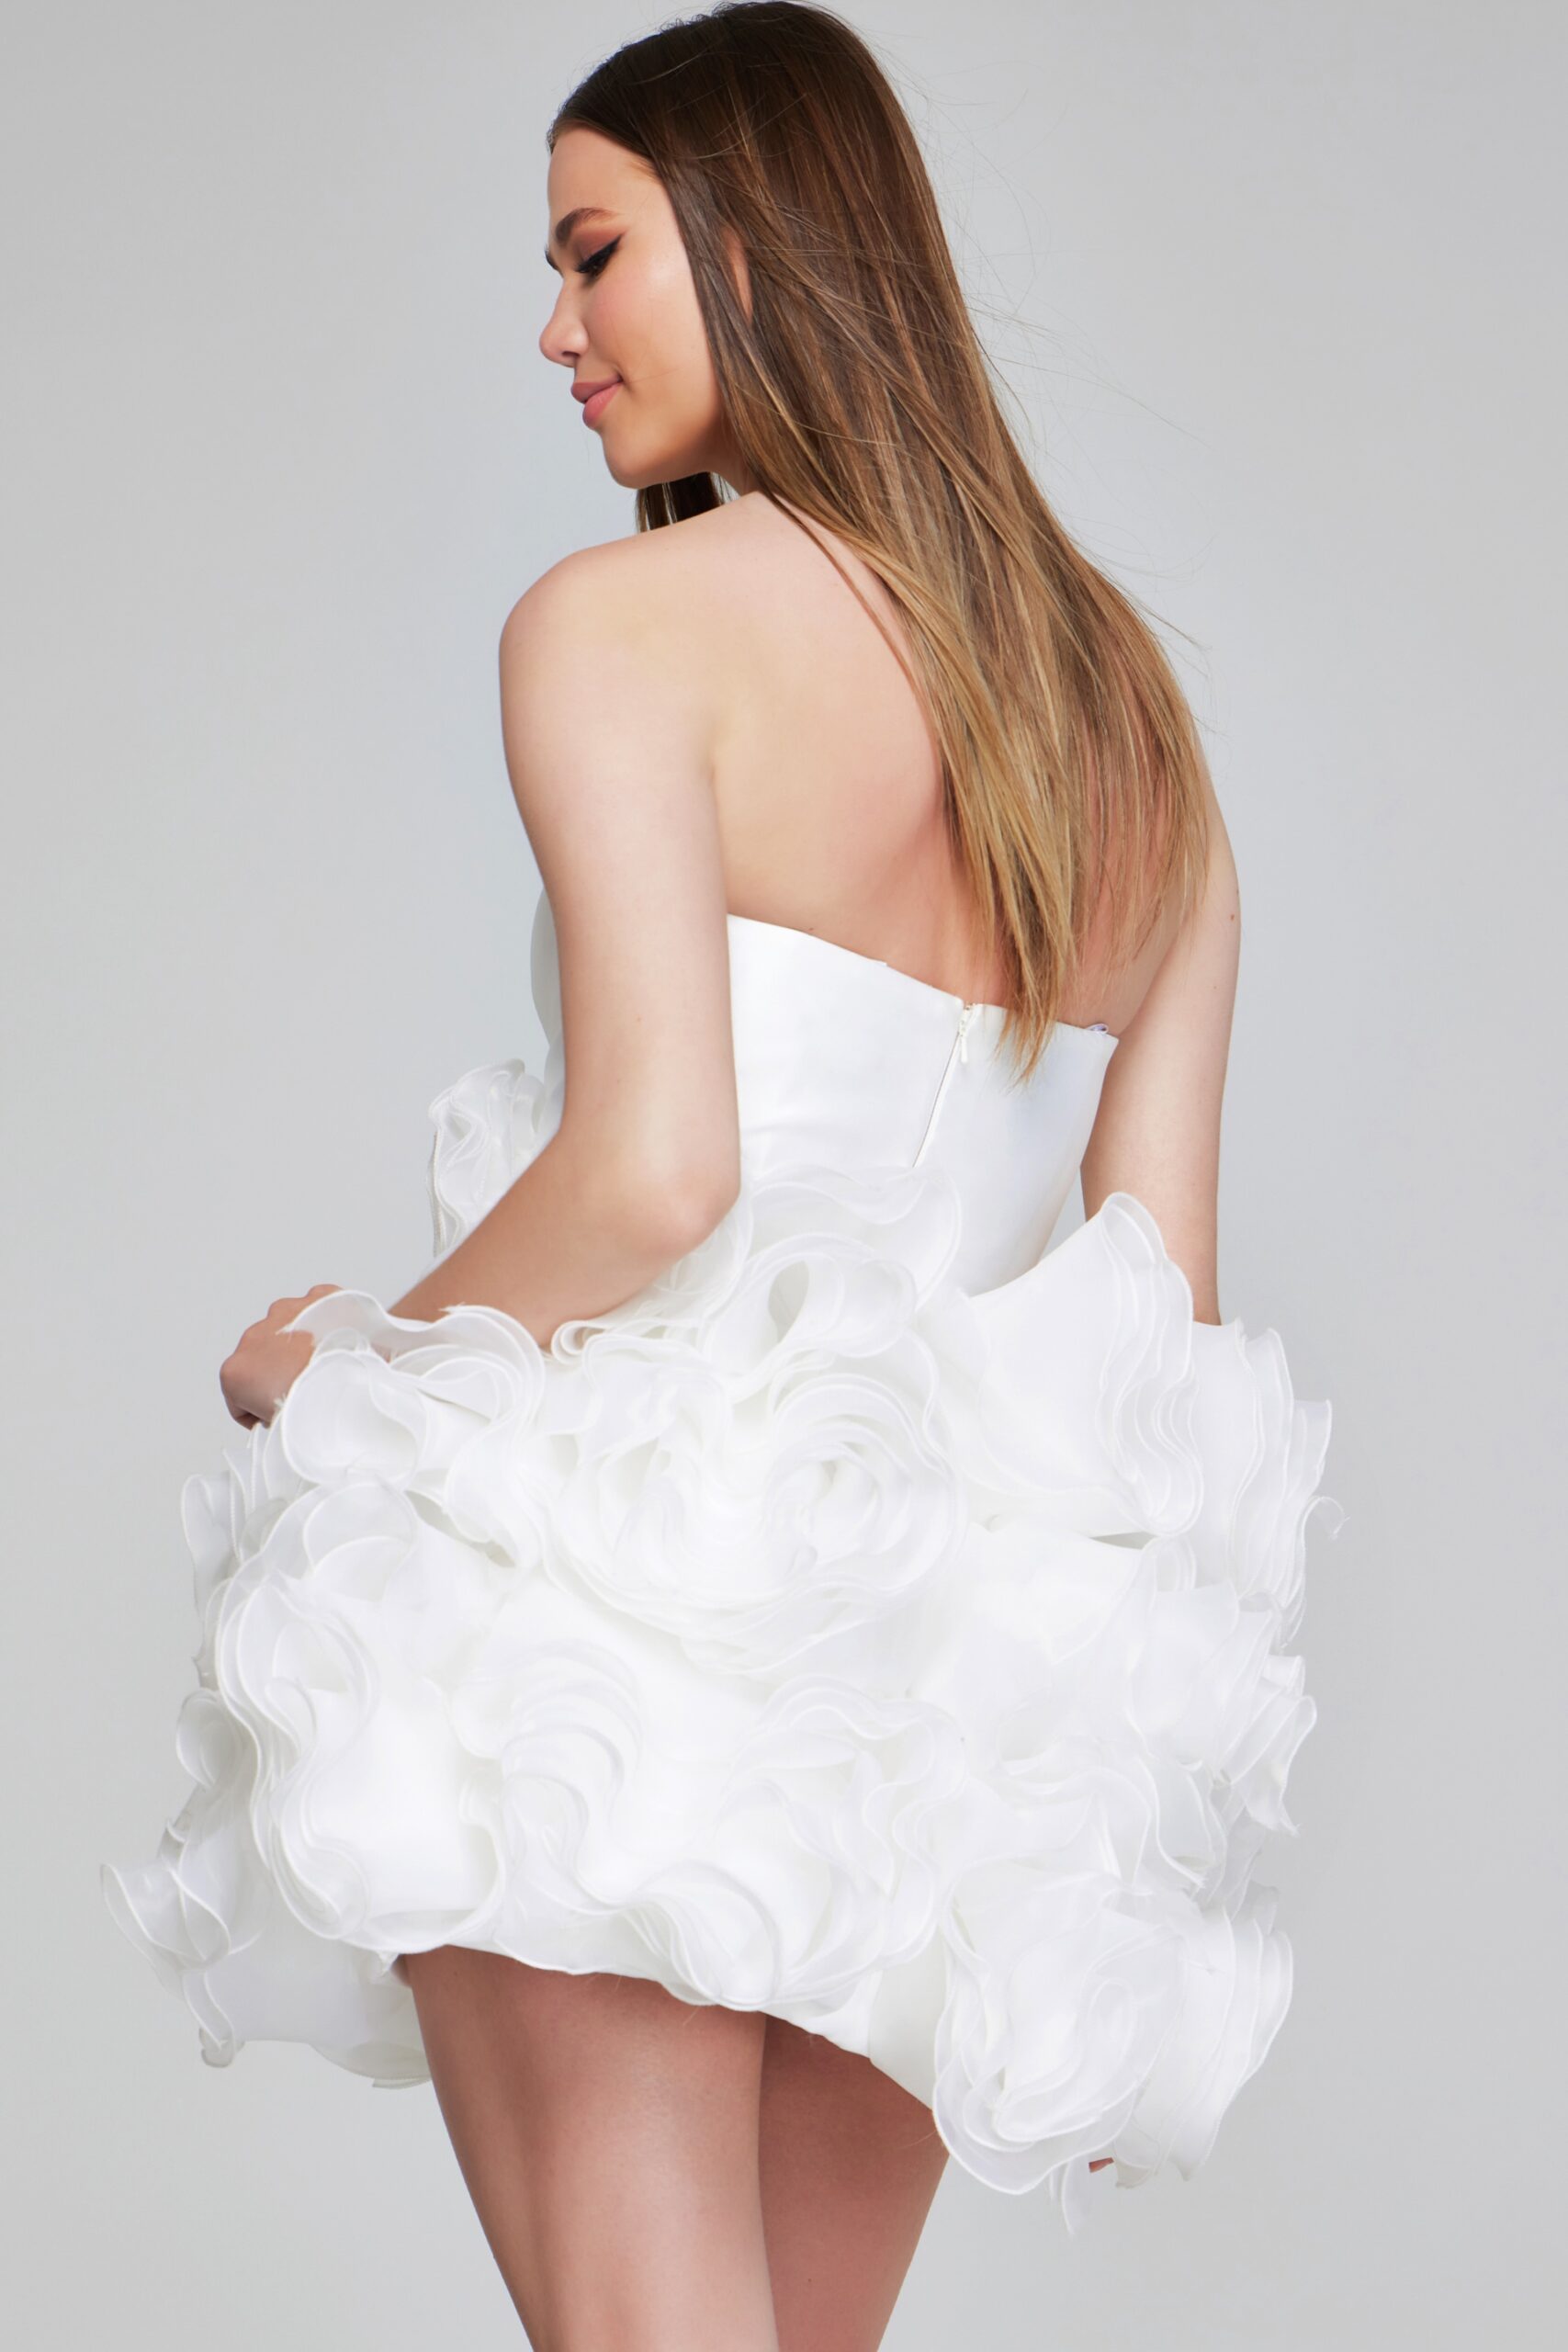 Strapless Little White Dress 40334